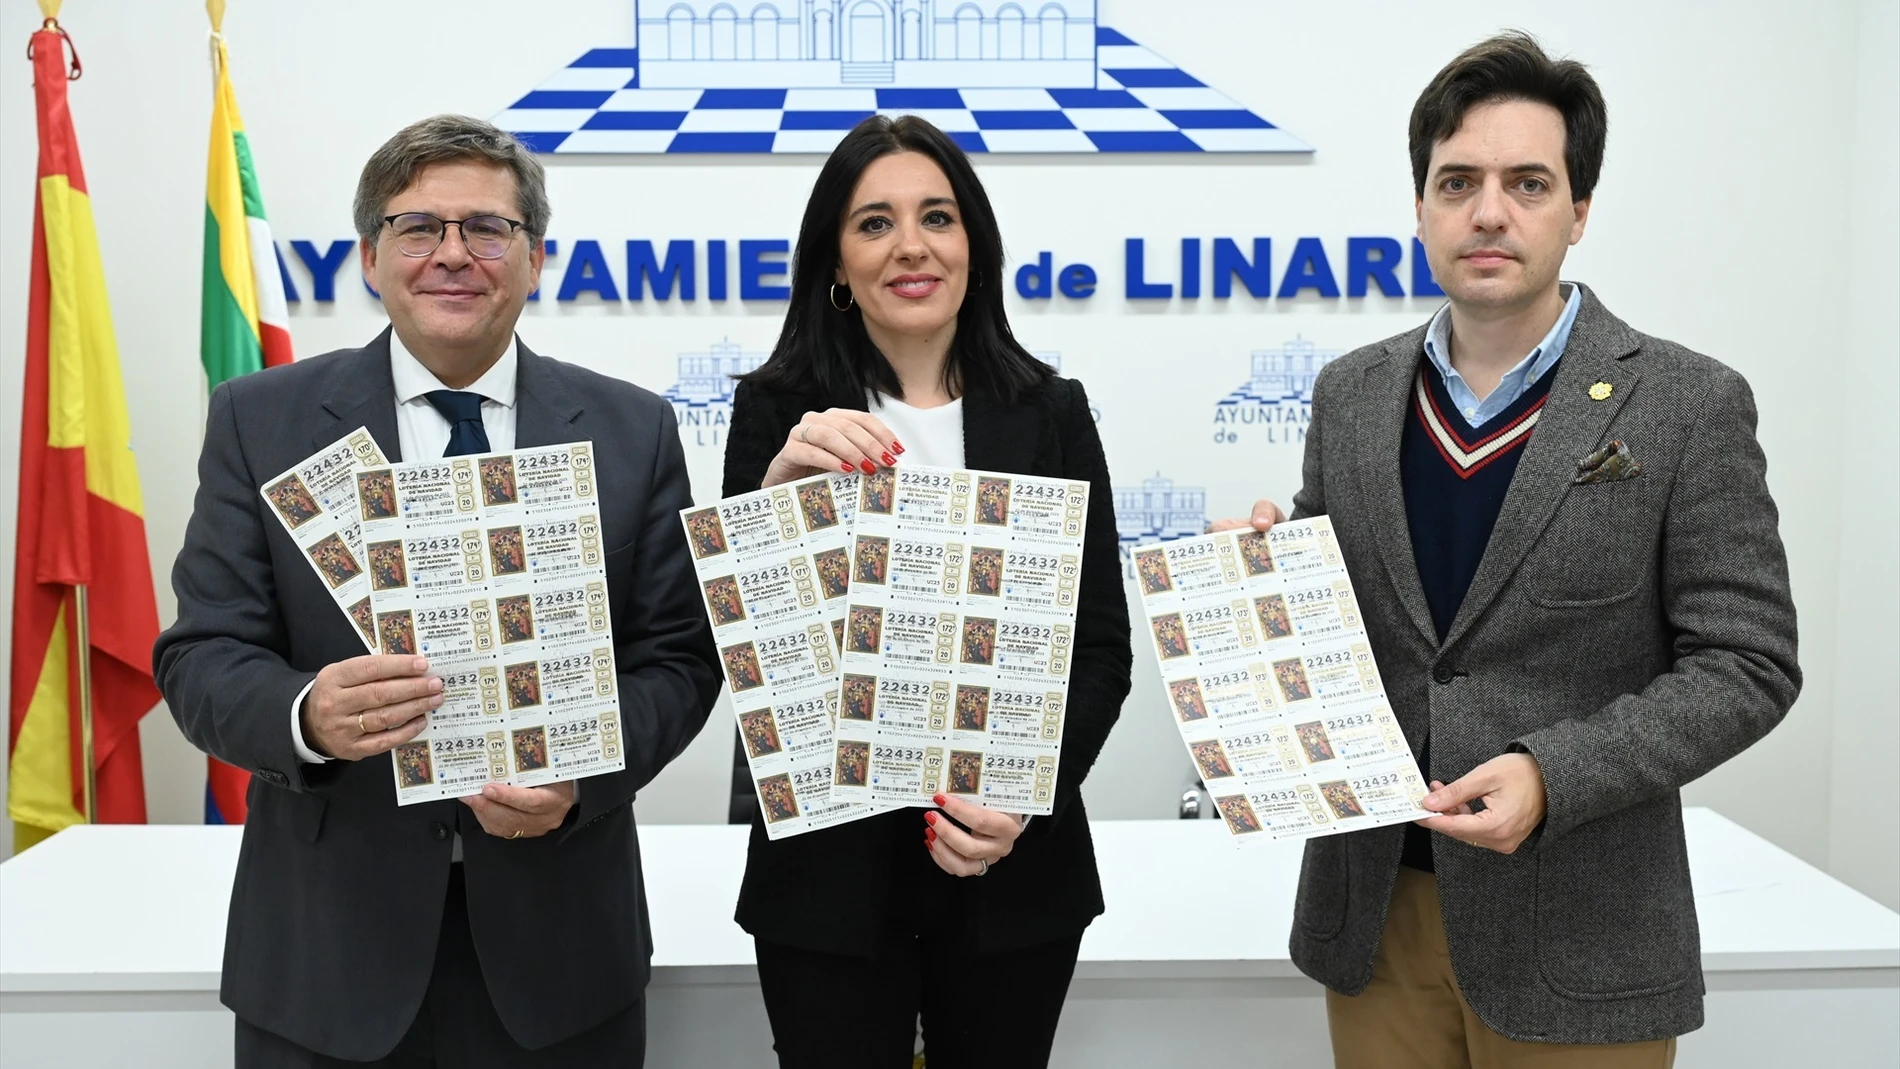 Presentación de los décimos que juega en común la ciudadanía de Linares